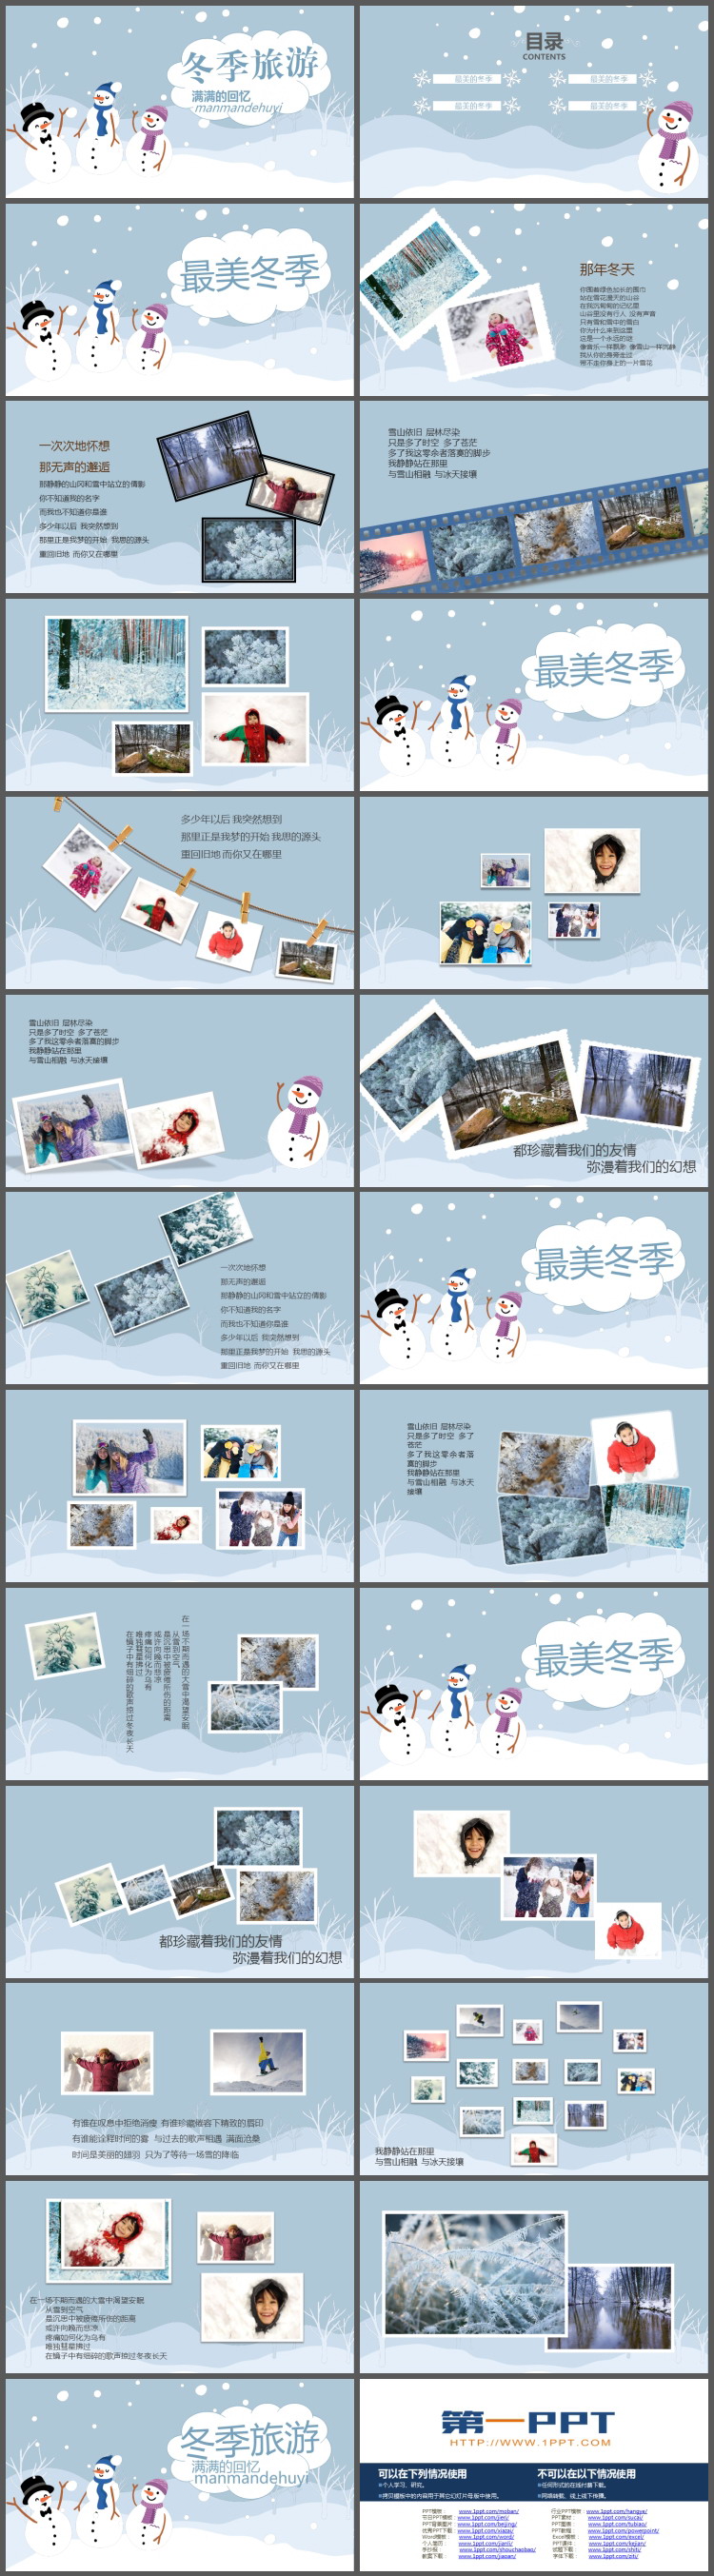 卡通雪地雪人背景的冬季旅行相册PPT模板